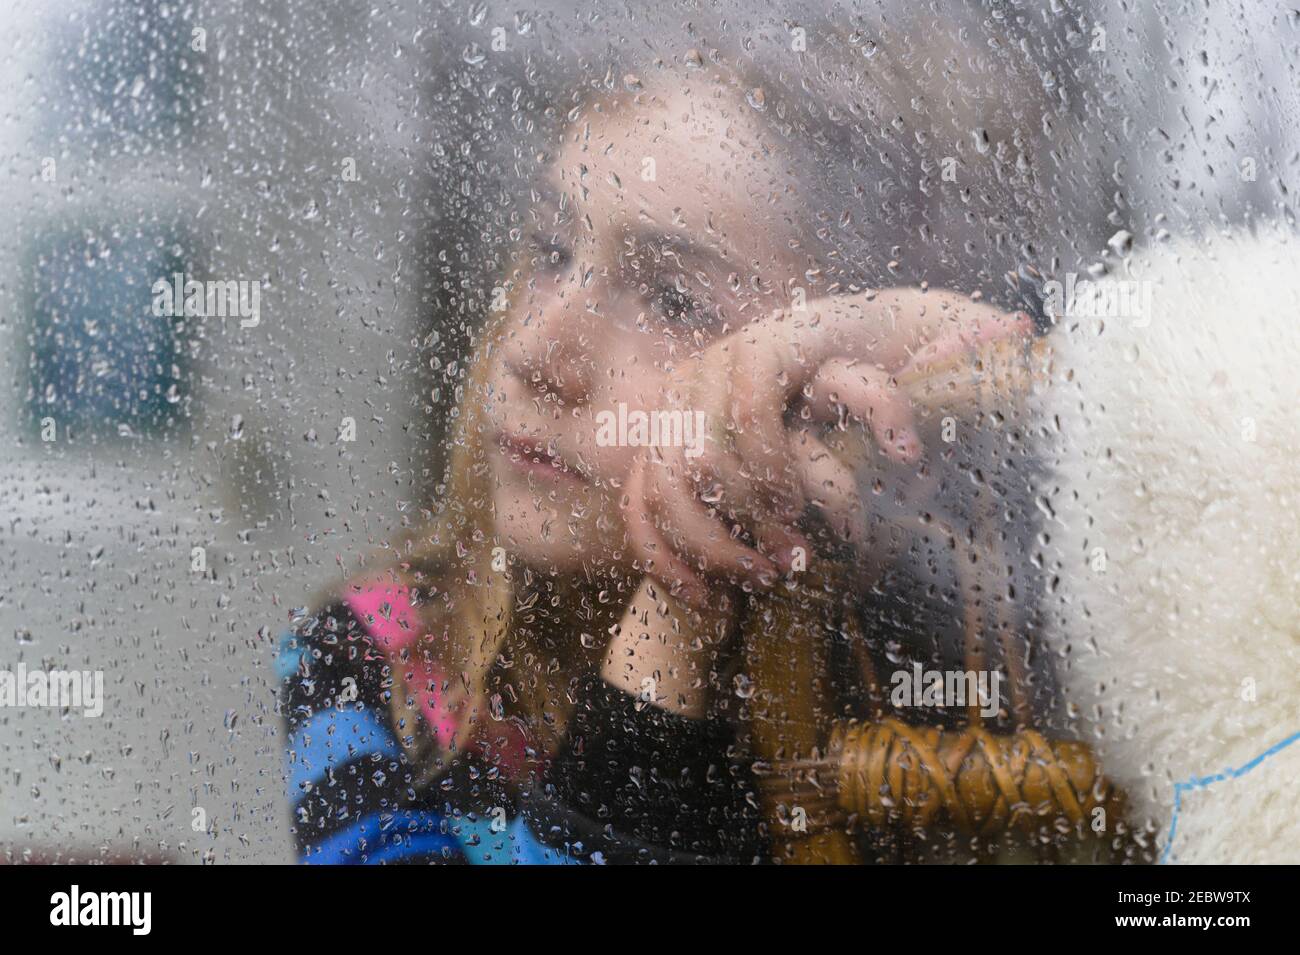 Nahaufnahme eines Mädchens (8-9), das am regnerischen Tag durch das Fenster schaut Stockfoto